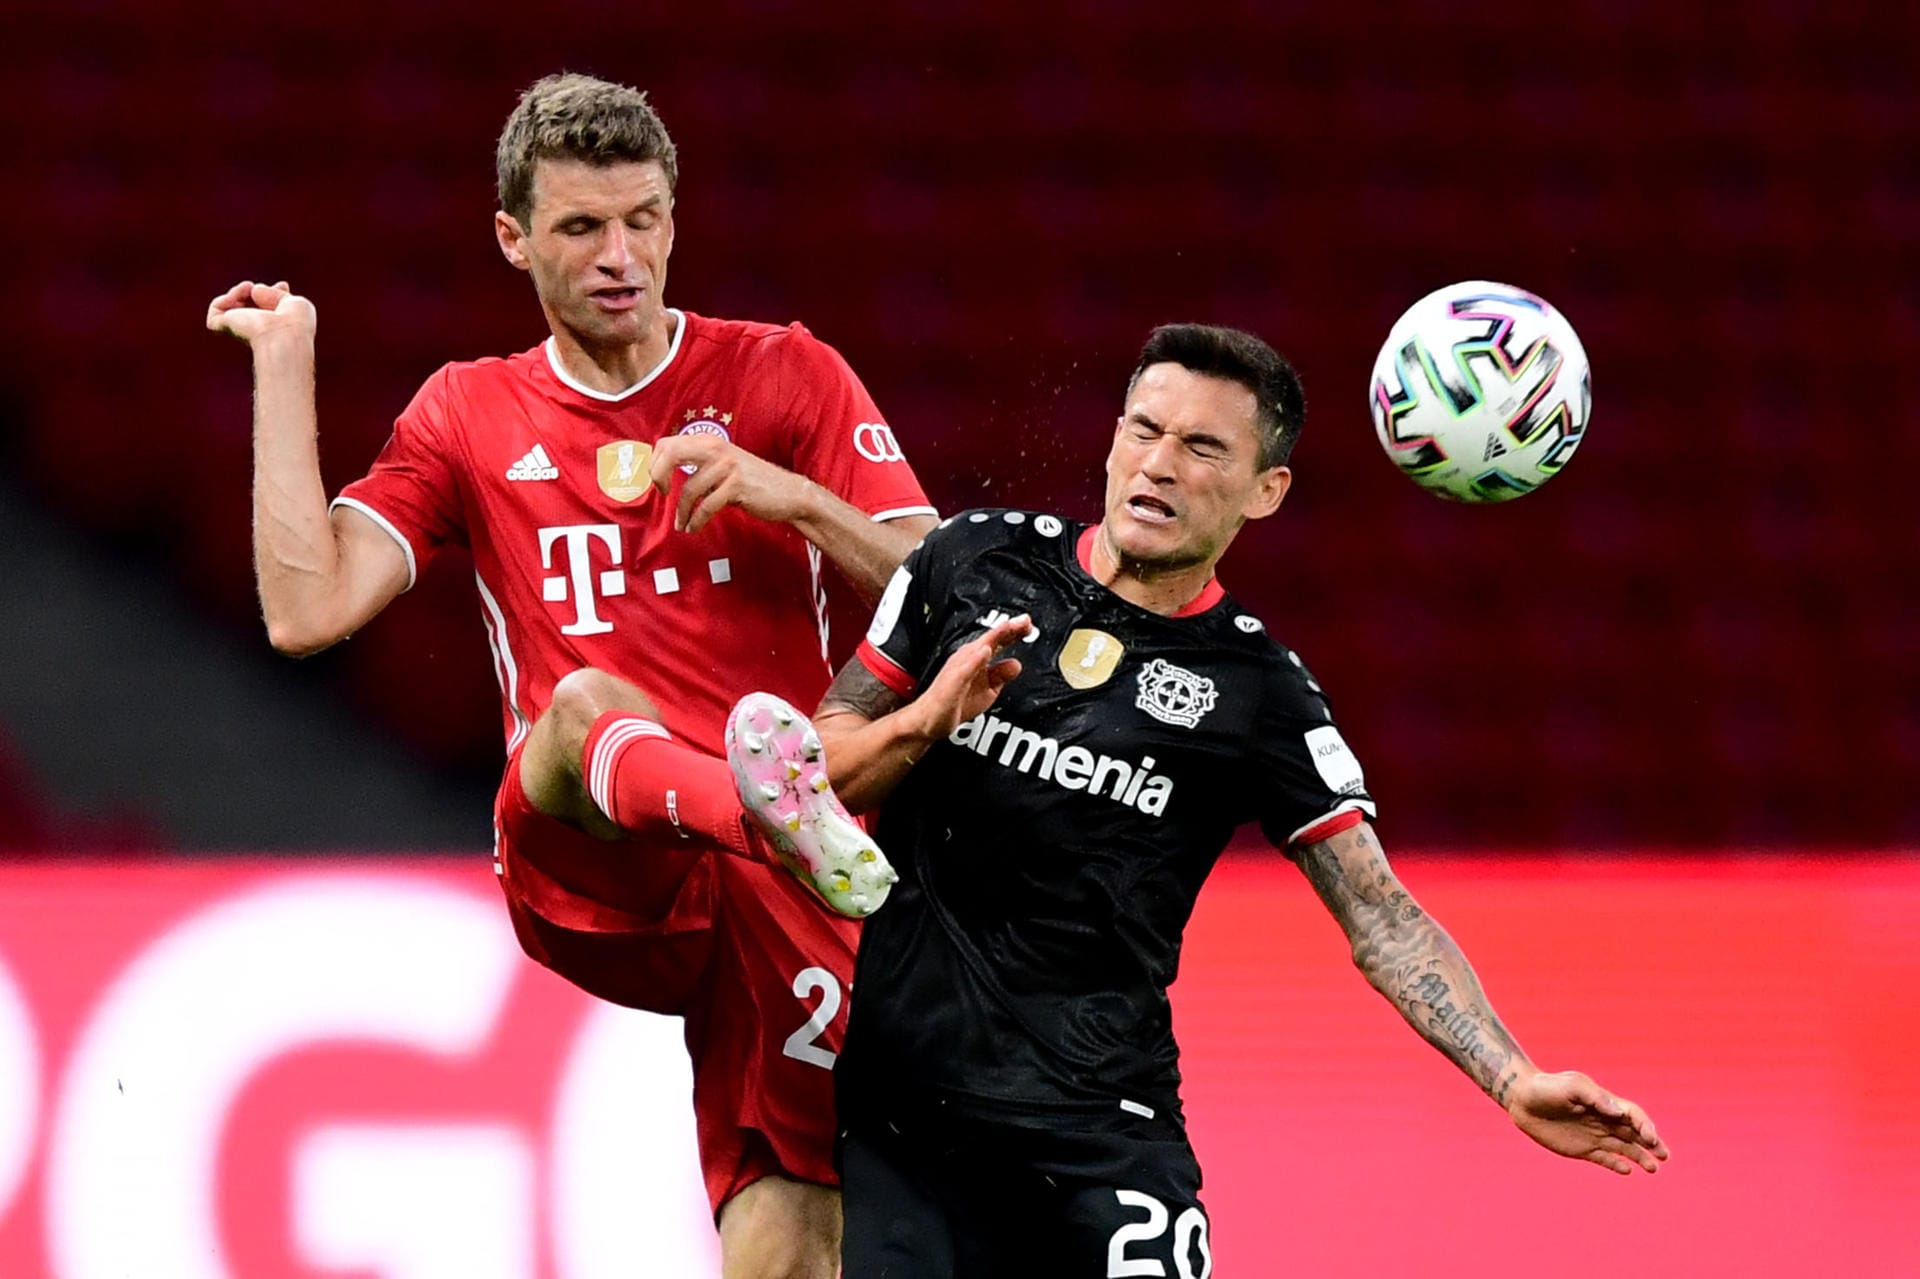 Thomas Müller (FC Bayern) über die Kulisse: "Es ist auch ein bisschen ein trauriger Moment. Wenn in so einem Finale in diesem herrlichen Stadion die Fans fehlen – da hatte ich bei der Siegerehrung schon einen ruhigen Moment."